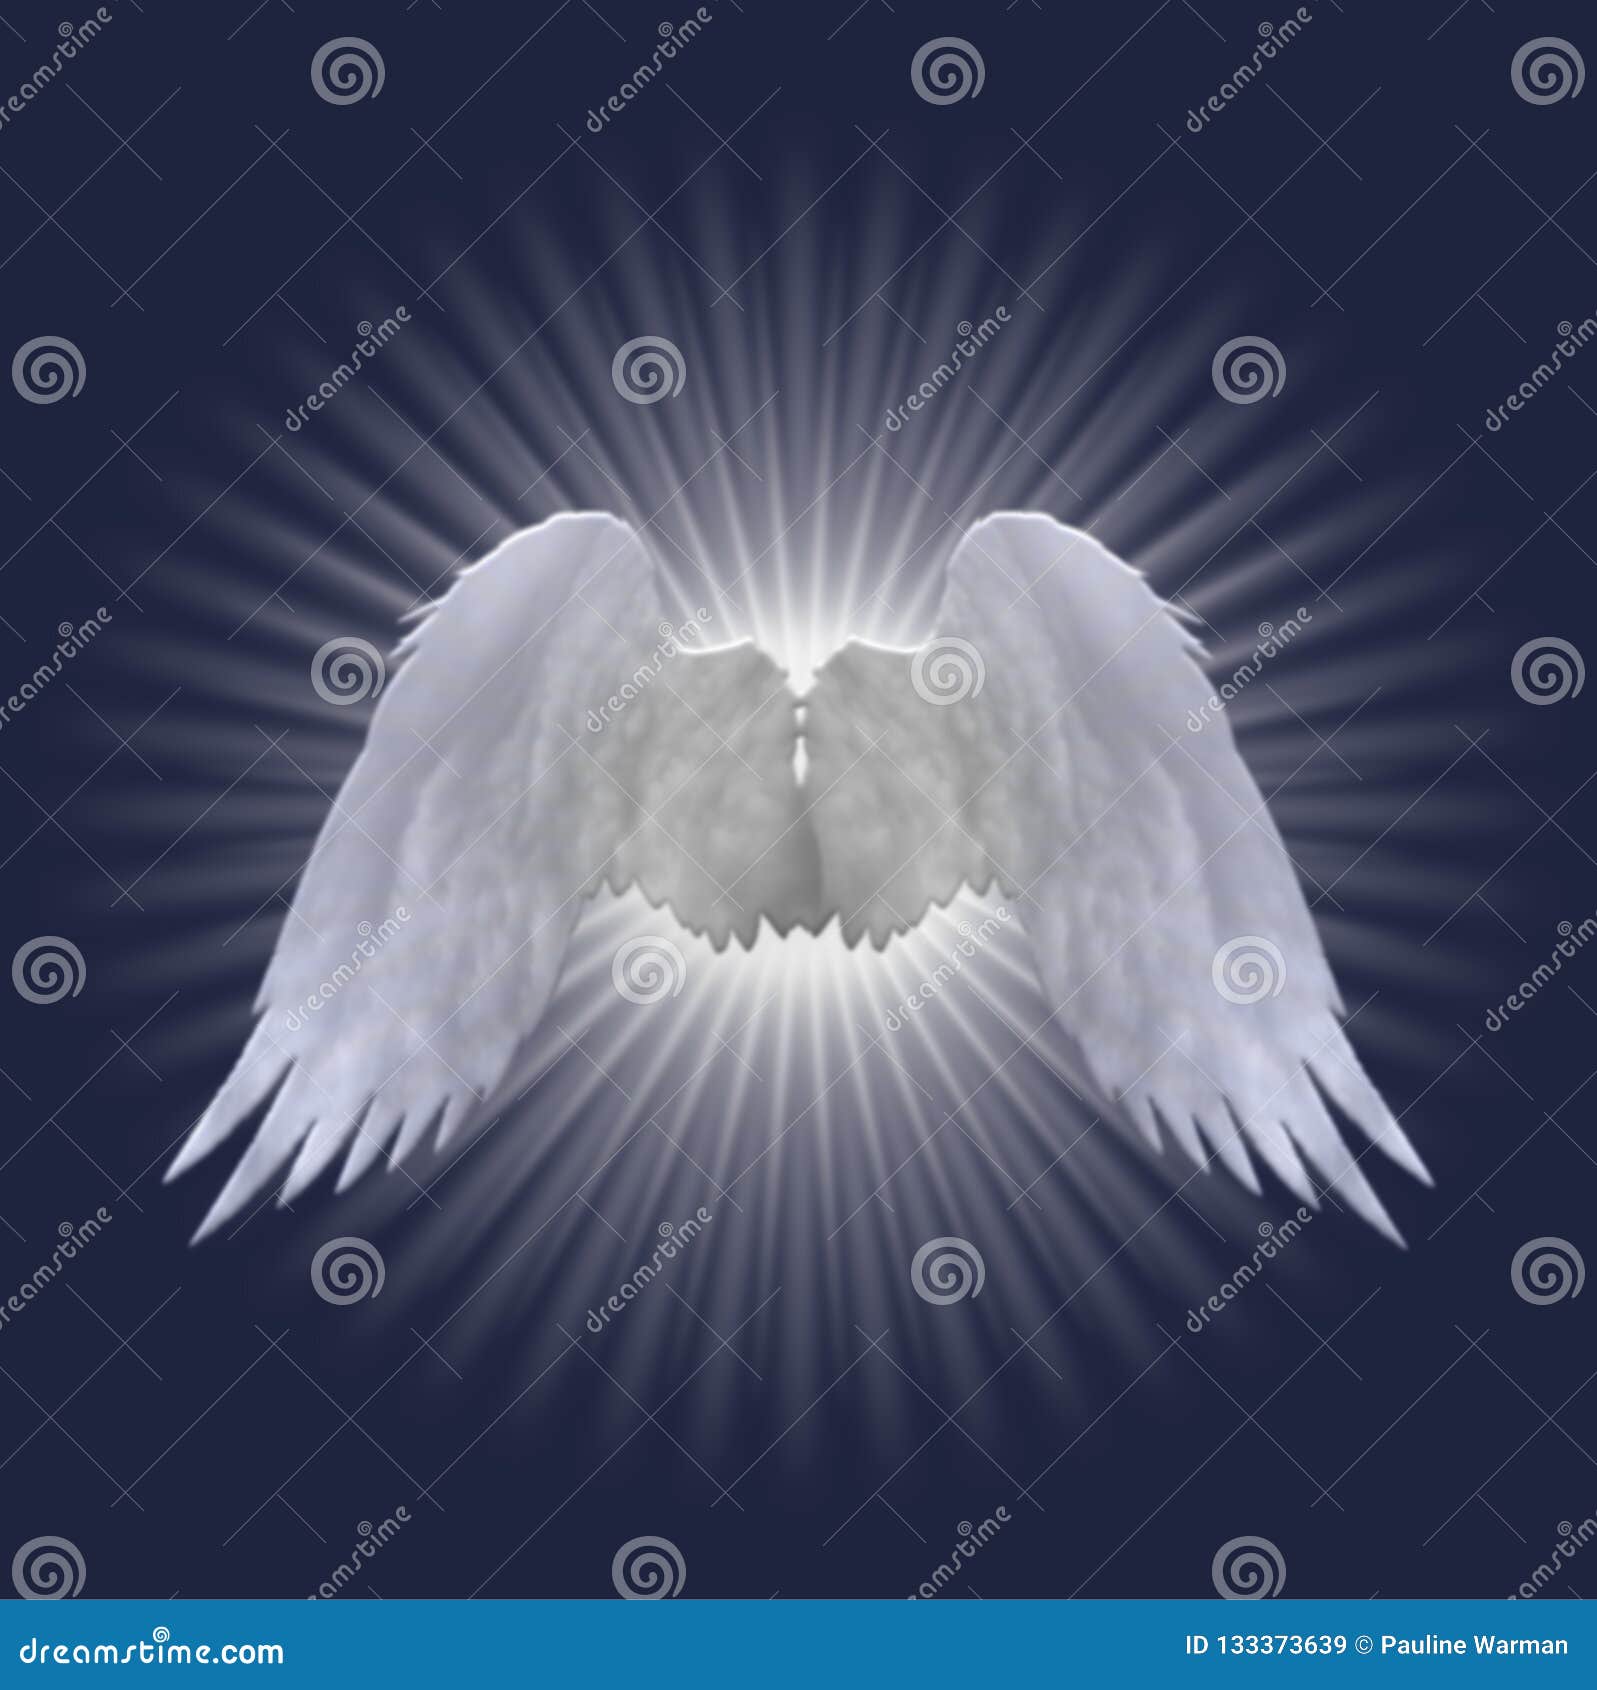 White Angel Wings Design on Dark Blue Background Stock Illustration -  Illustration of heaven, spirit: 133373639